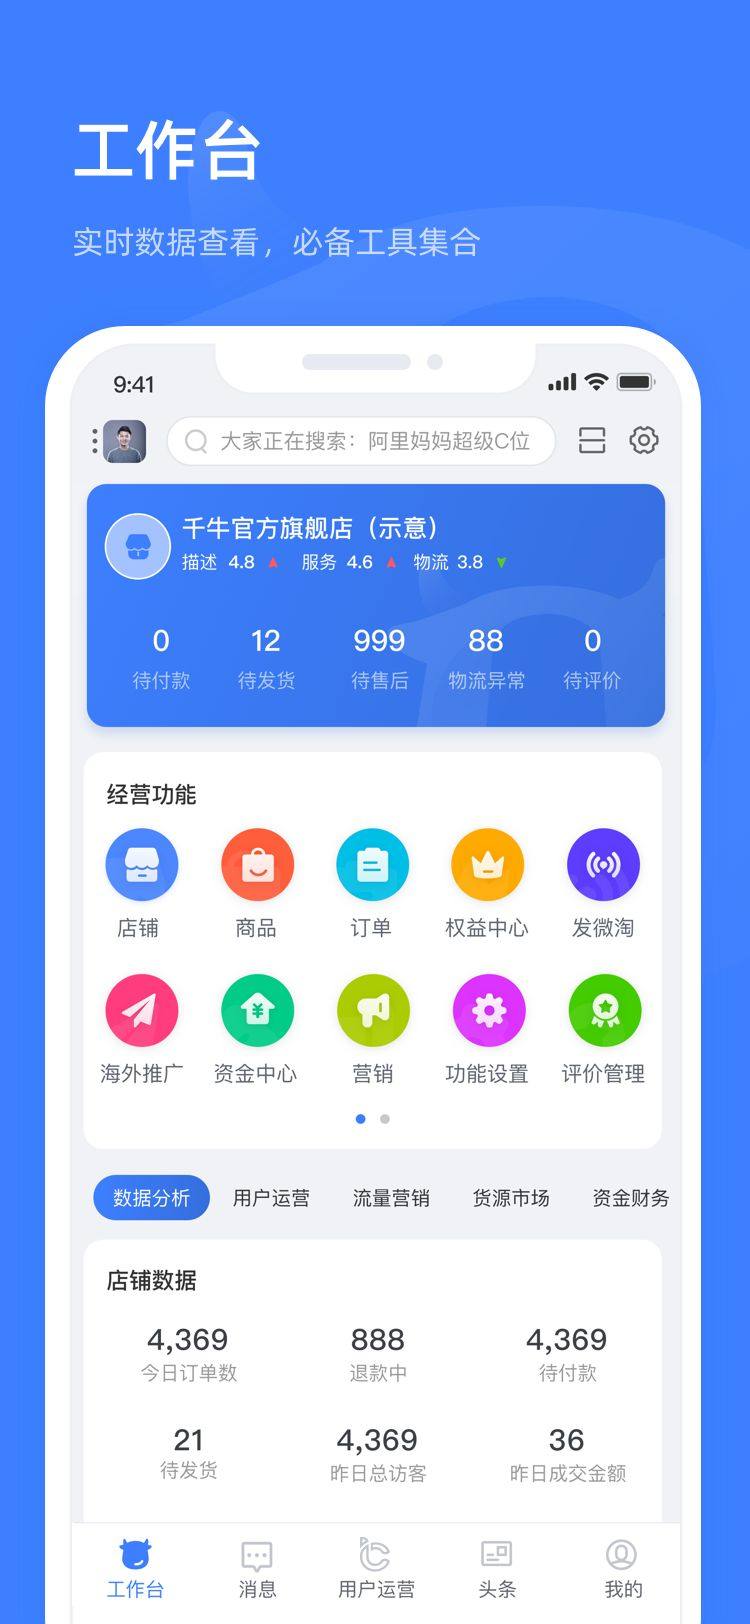 千牛淘宝卖家版工作台 v8.10.0 Google Play 最后一个app版本下载[Android]